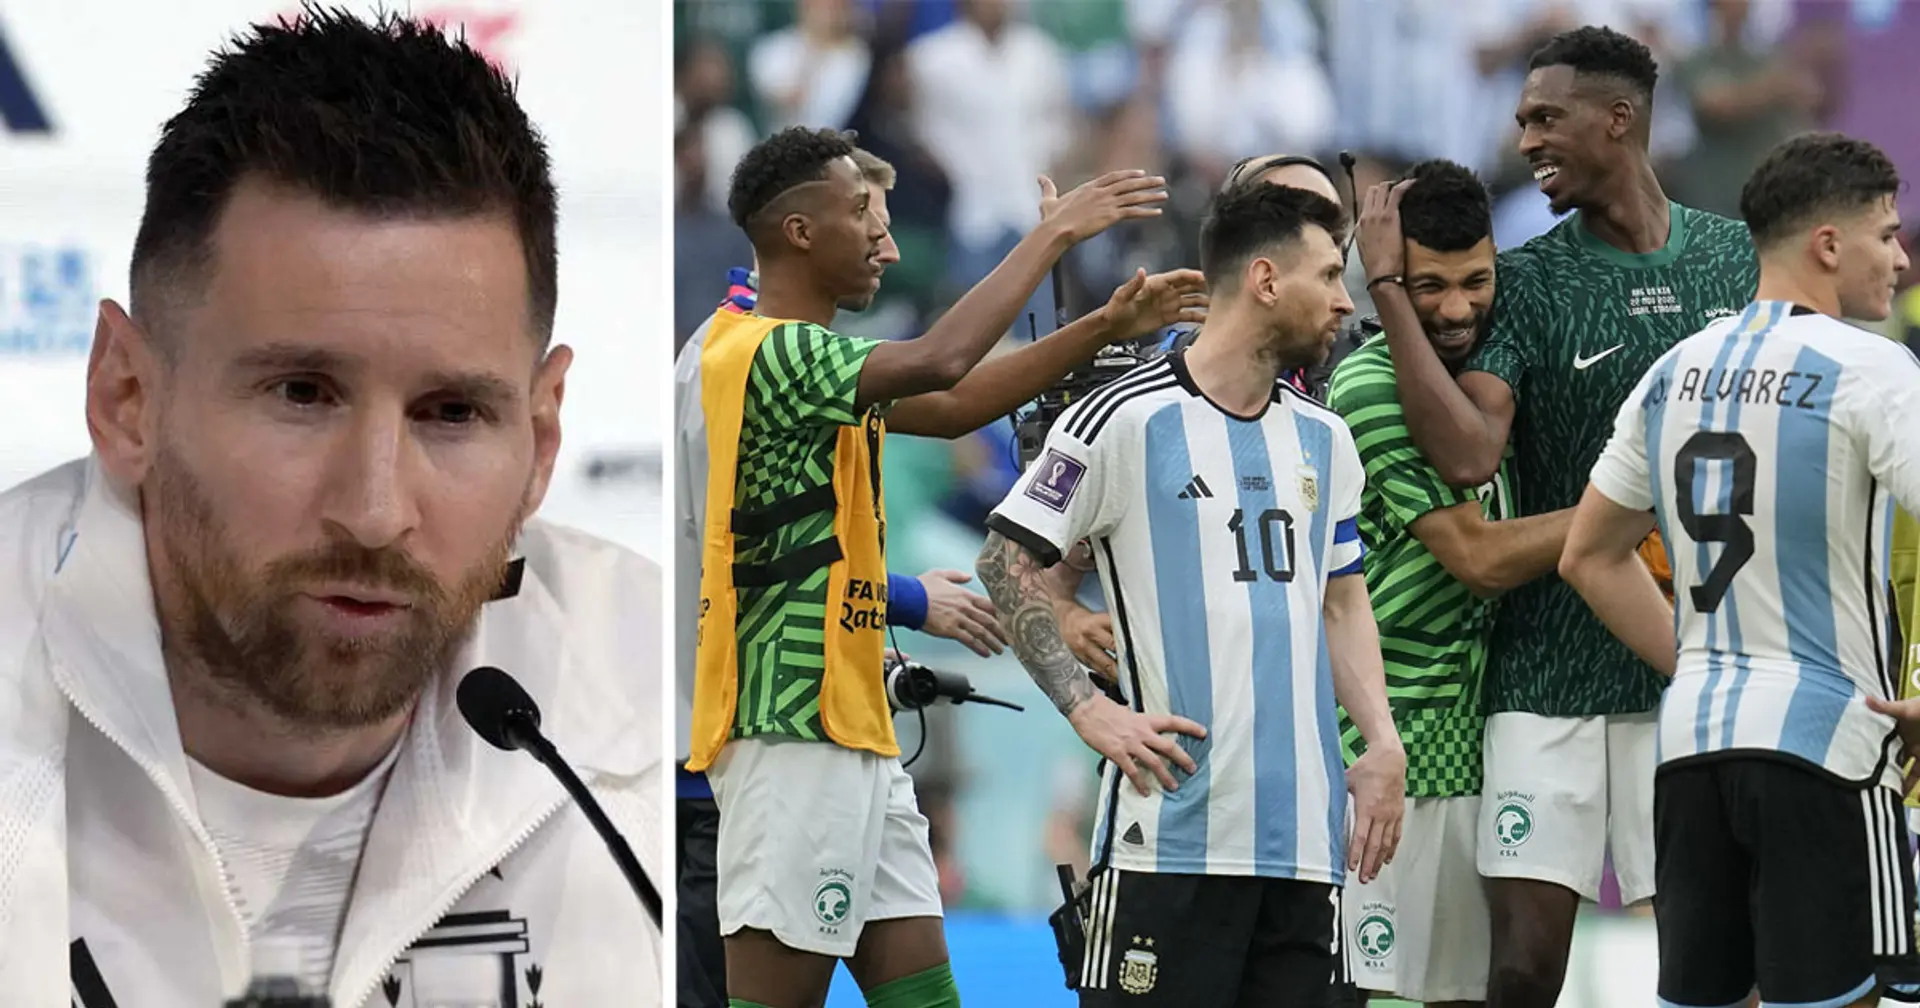 "L'équipe était morte": Messi commente sa défaite embarrassante face à l'Arabie saoudite